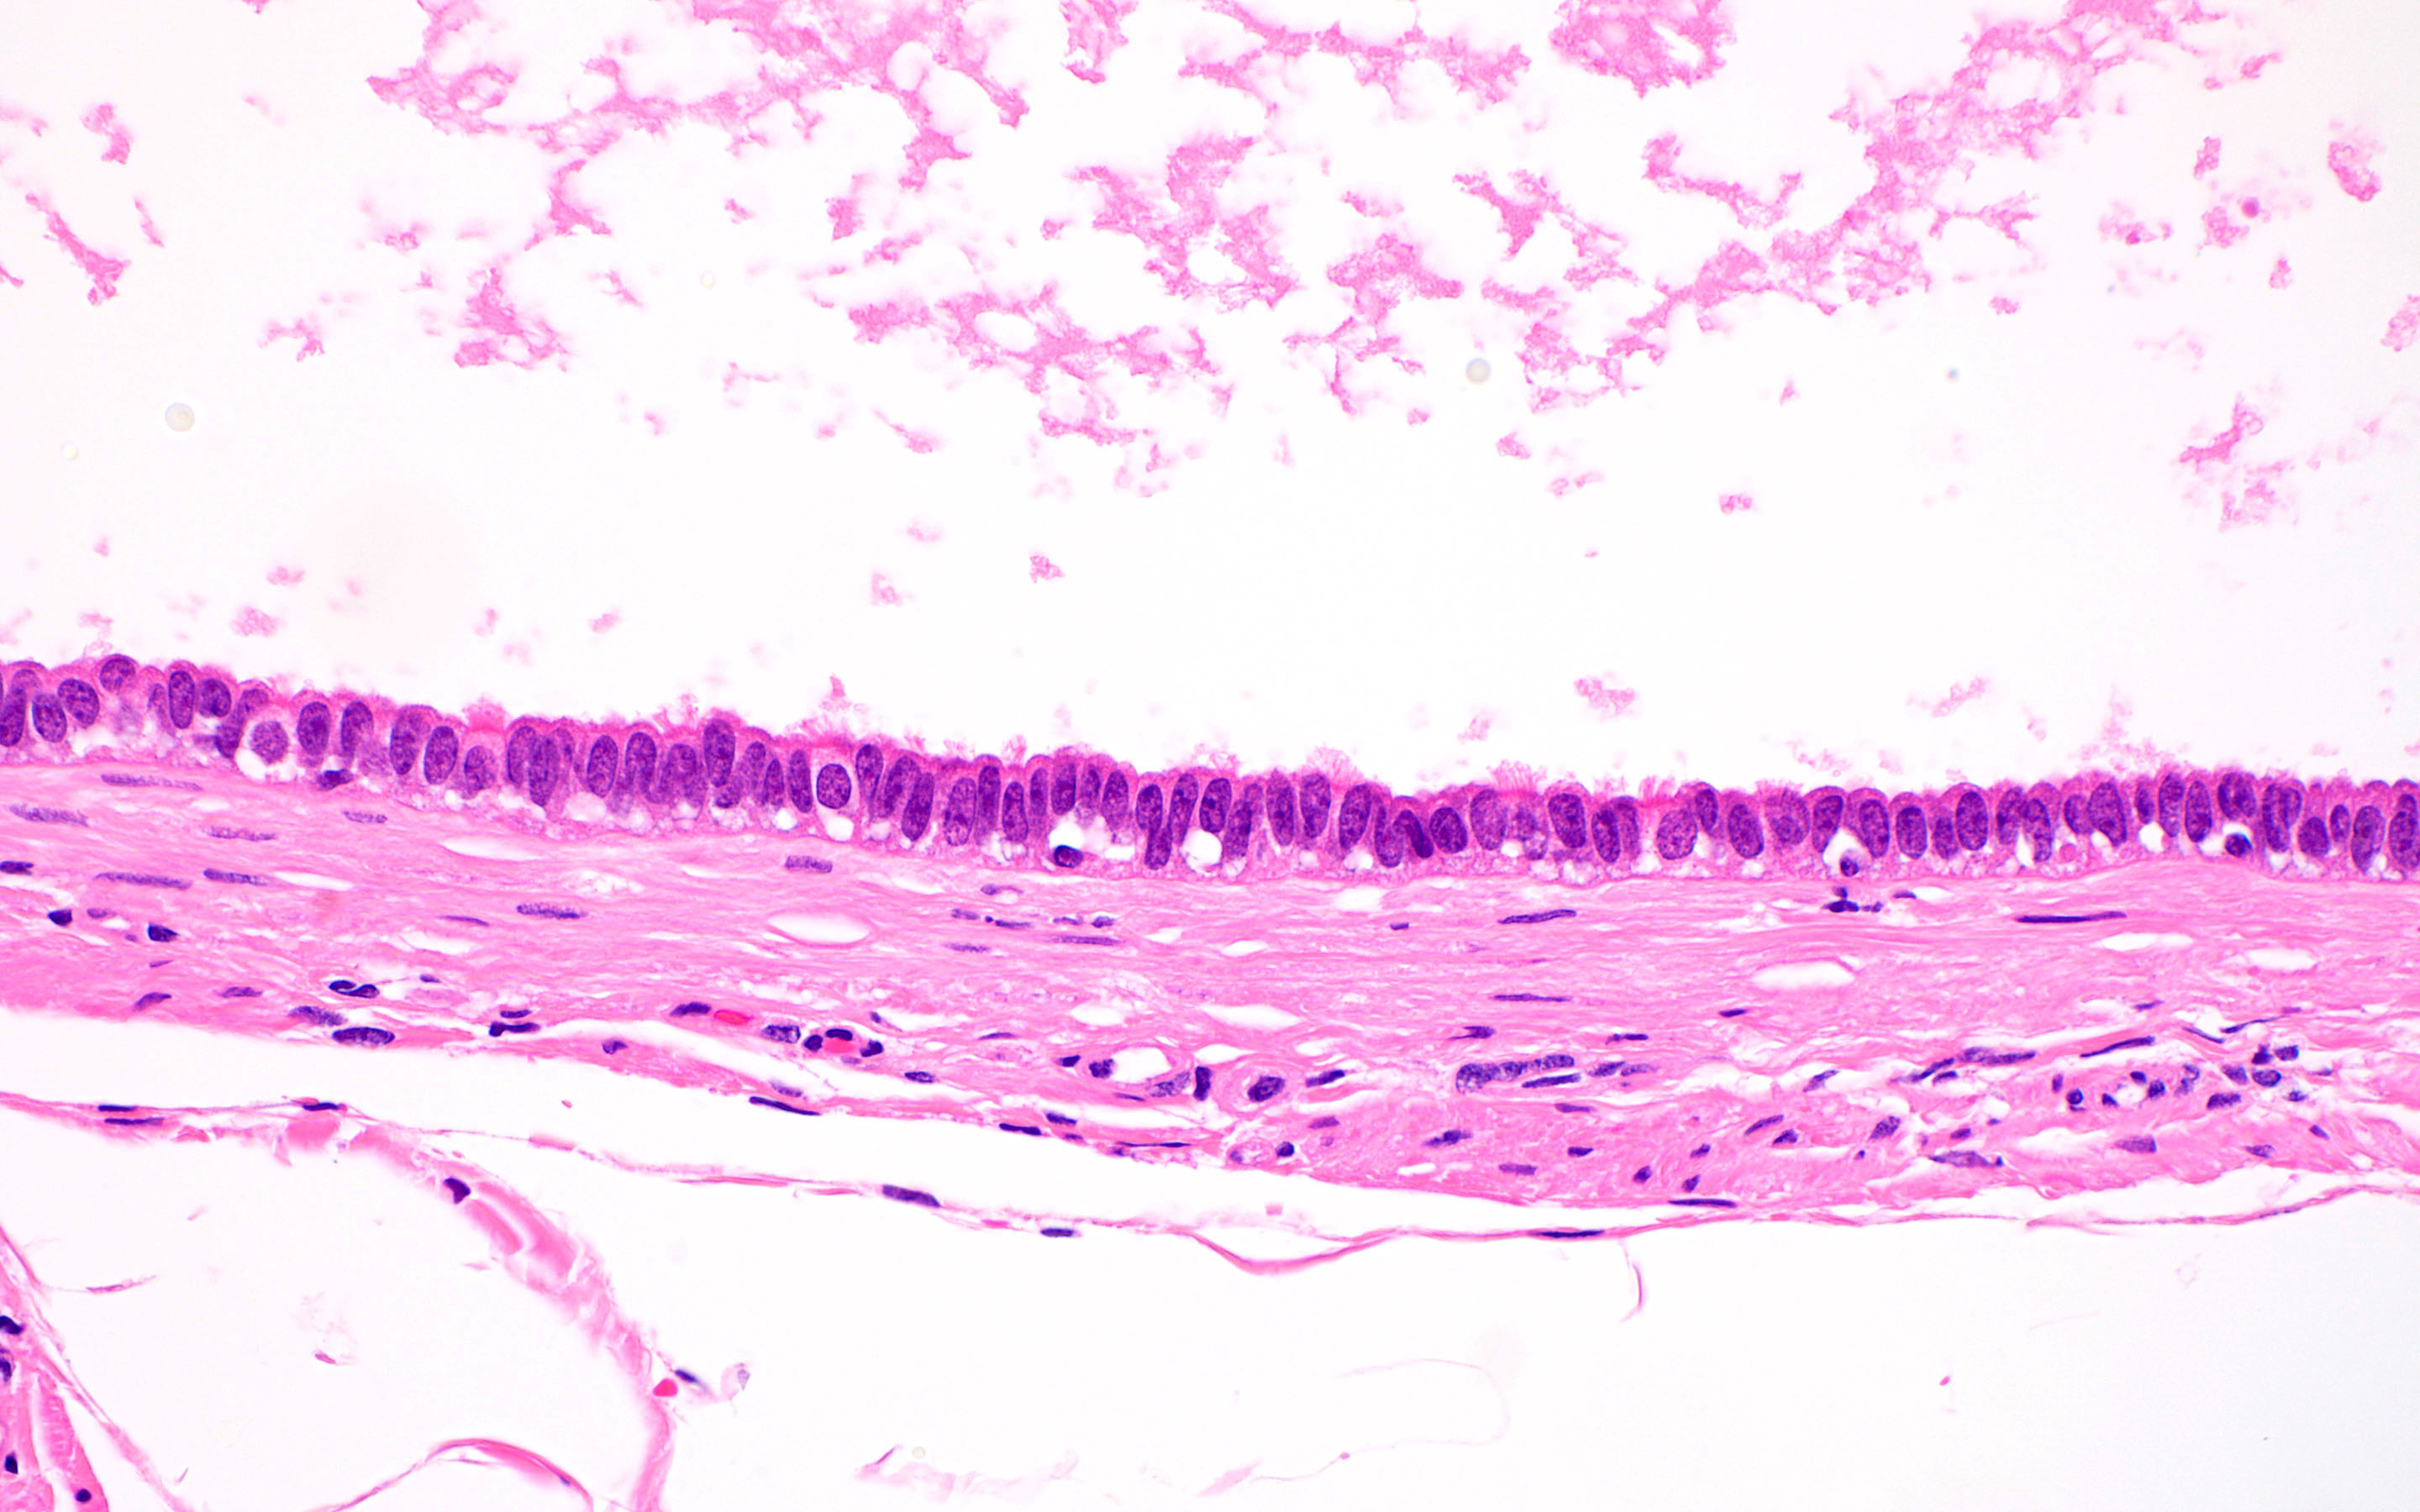 Bland, ciliated, tubal type epithelium